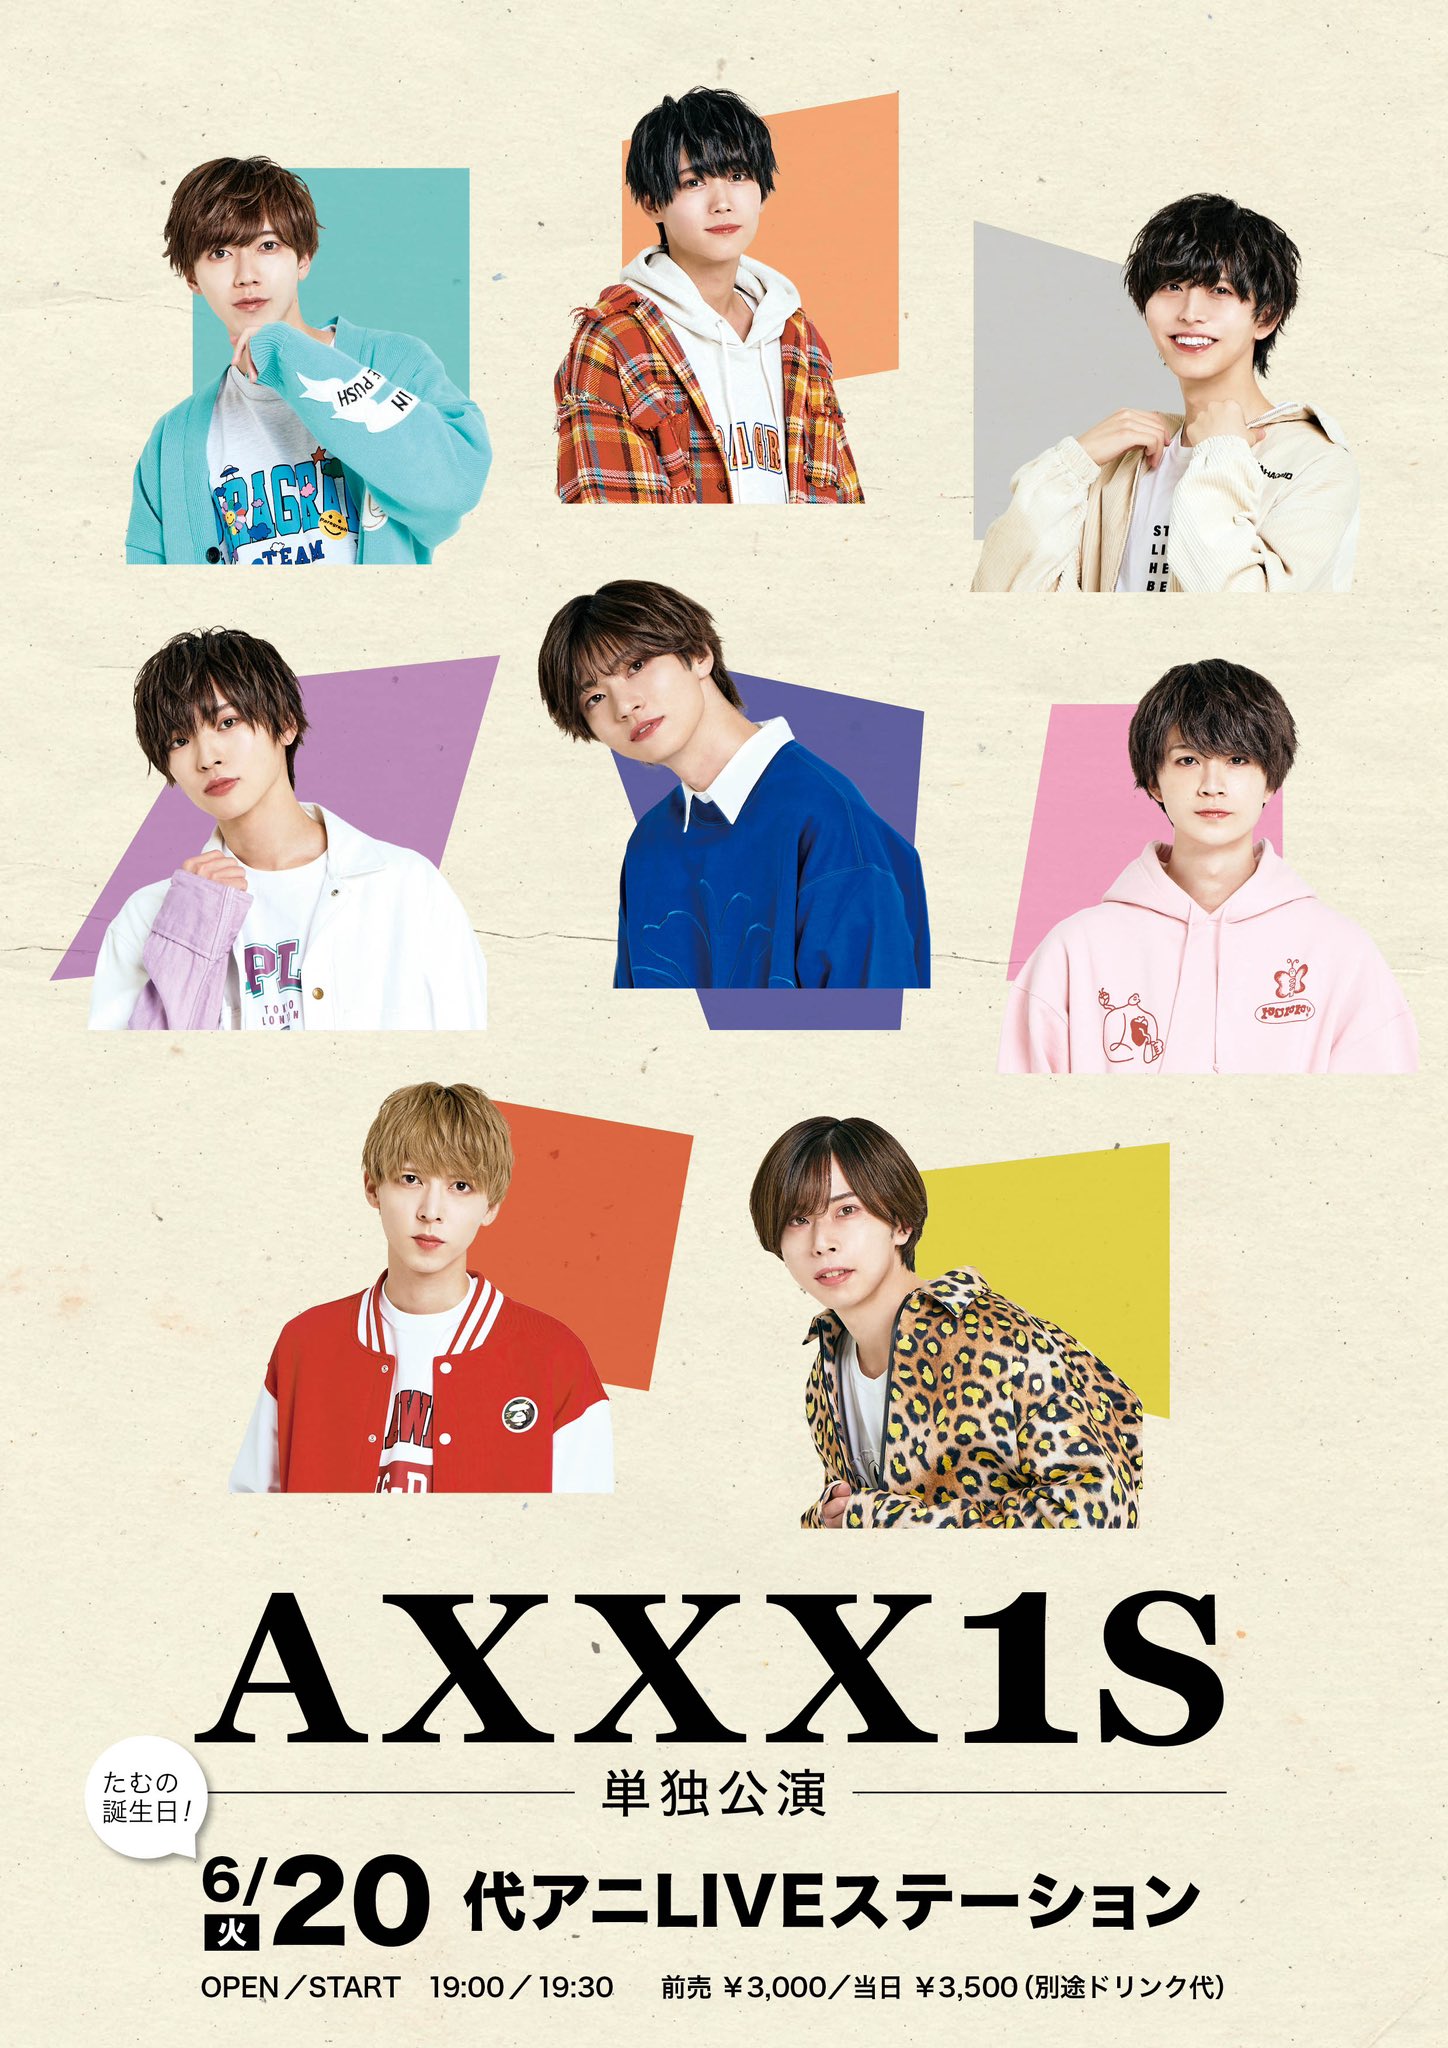 AXXX1S 6/20 AXXX1S 単独公演 @代アニLIVEステーション